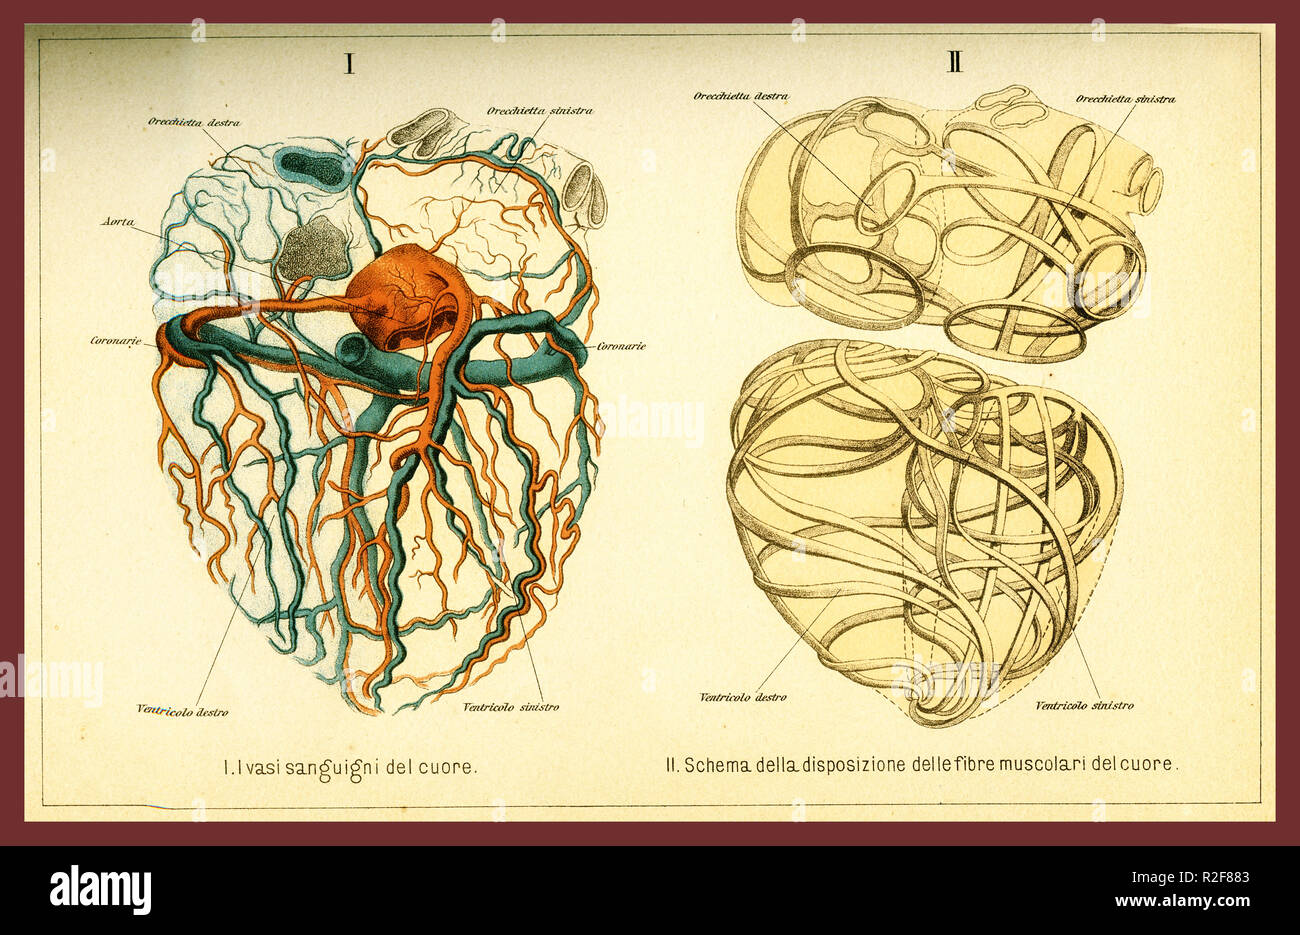 Vintage tabella colori di anatomia, il cuore umano fibre muscolari e la circolazione del sangue con descrizioni anatomiche in italiano Foto Stock